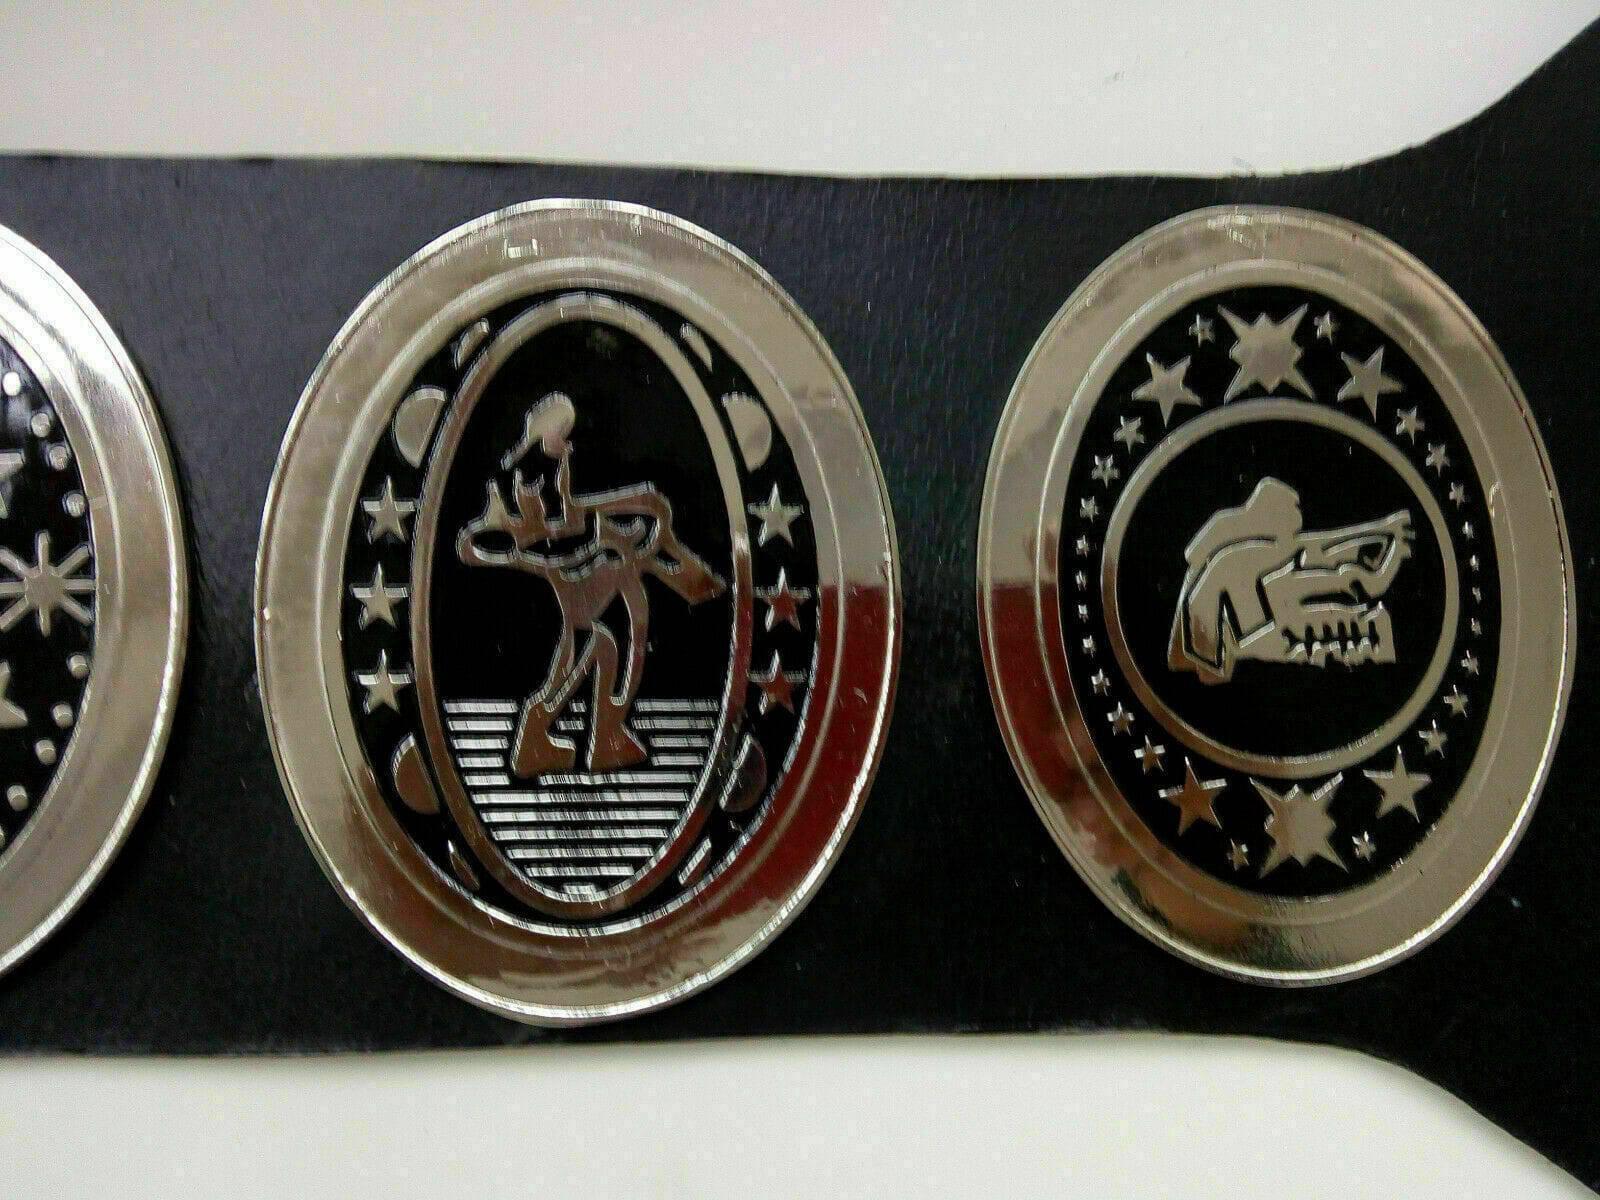 SOUTHERN HEAVYWEIGHT Brass Championship Belt - Zees Belts